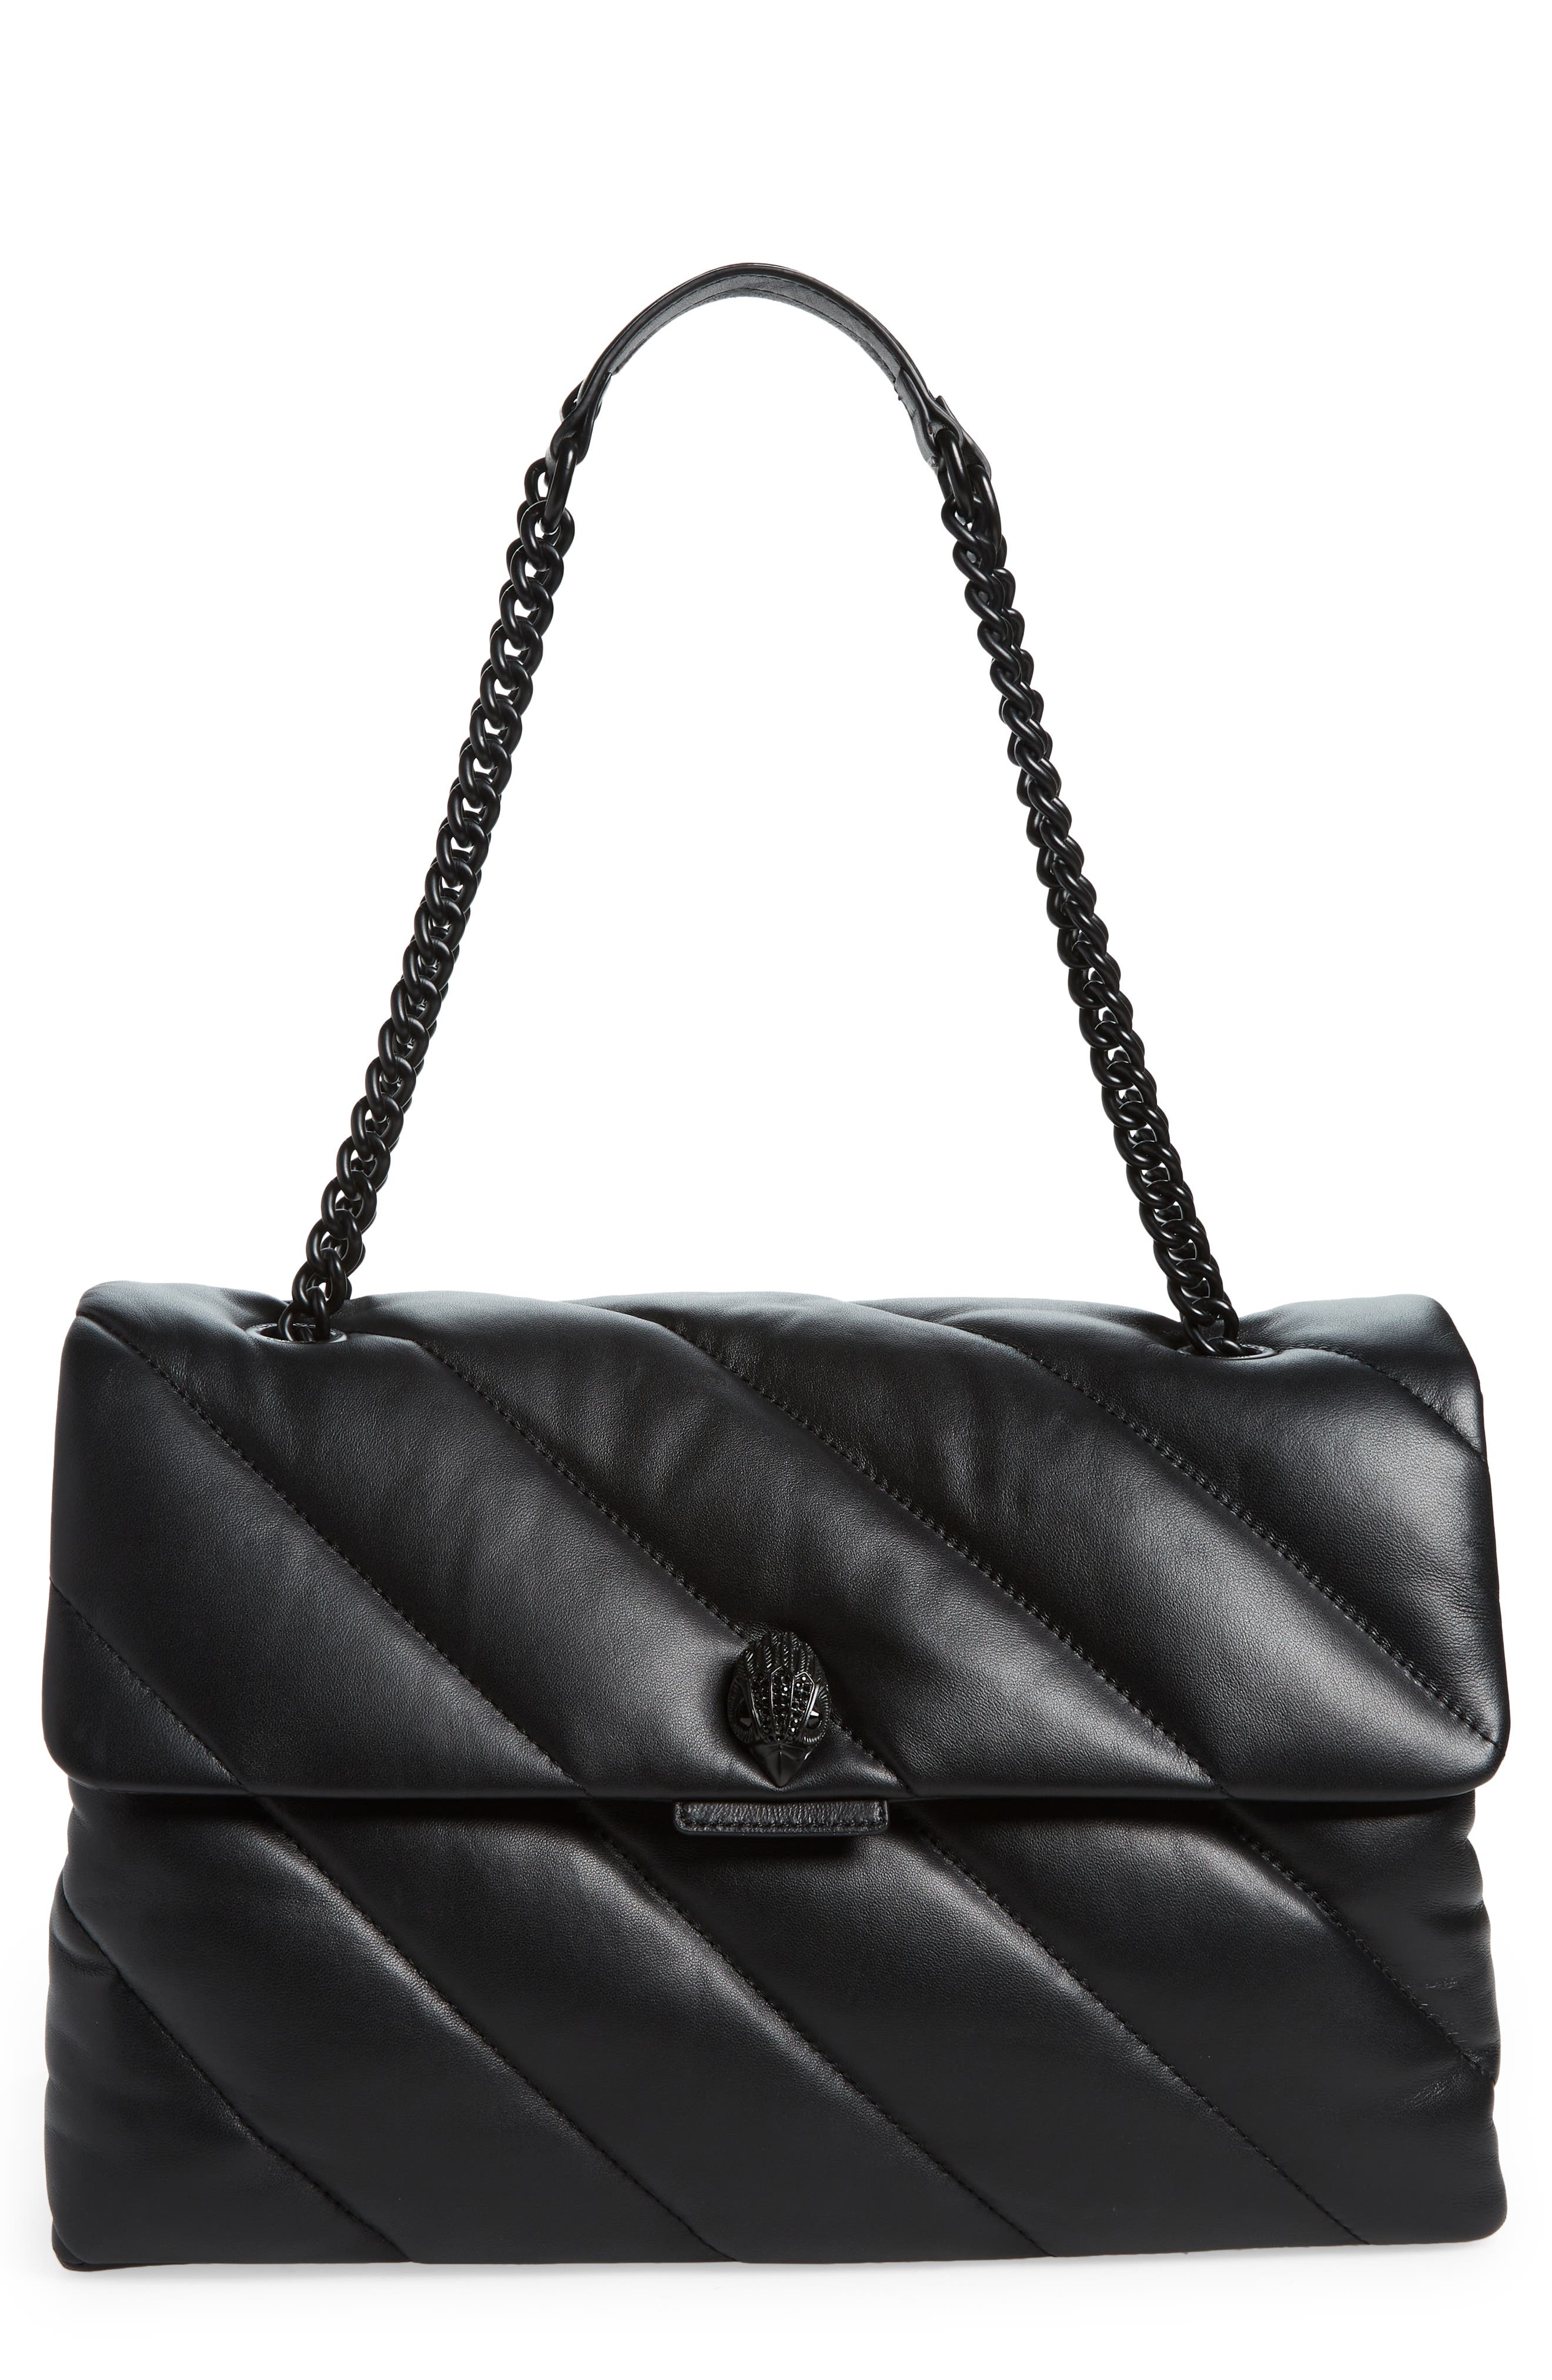 New Black Women Genuine Leather Sheepskin Tote Handbag Shoulder Bag S,M,L 